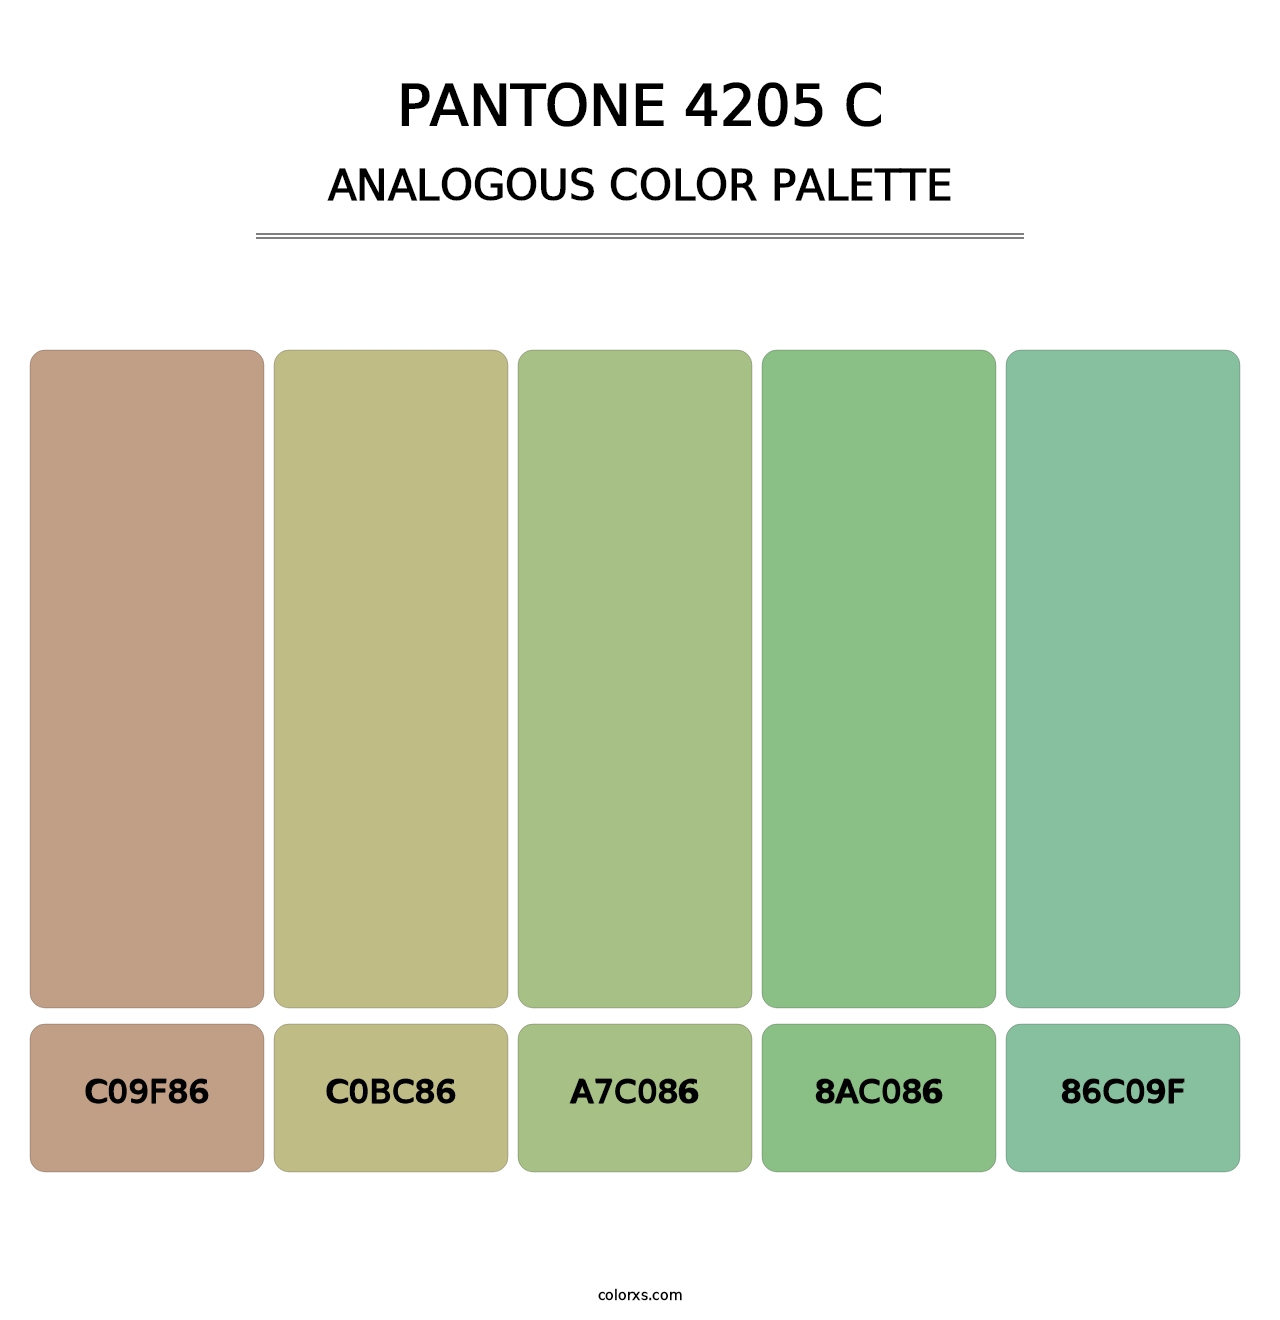 PANTONE 4205 C - Analogous Color Palette